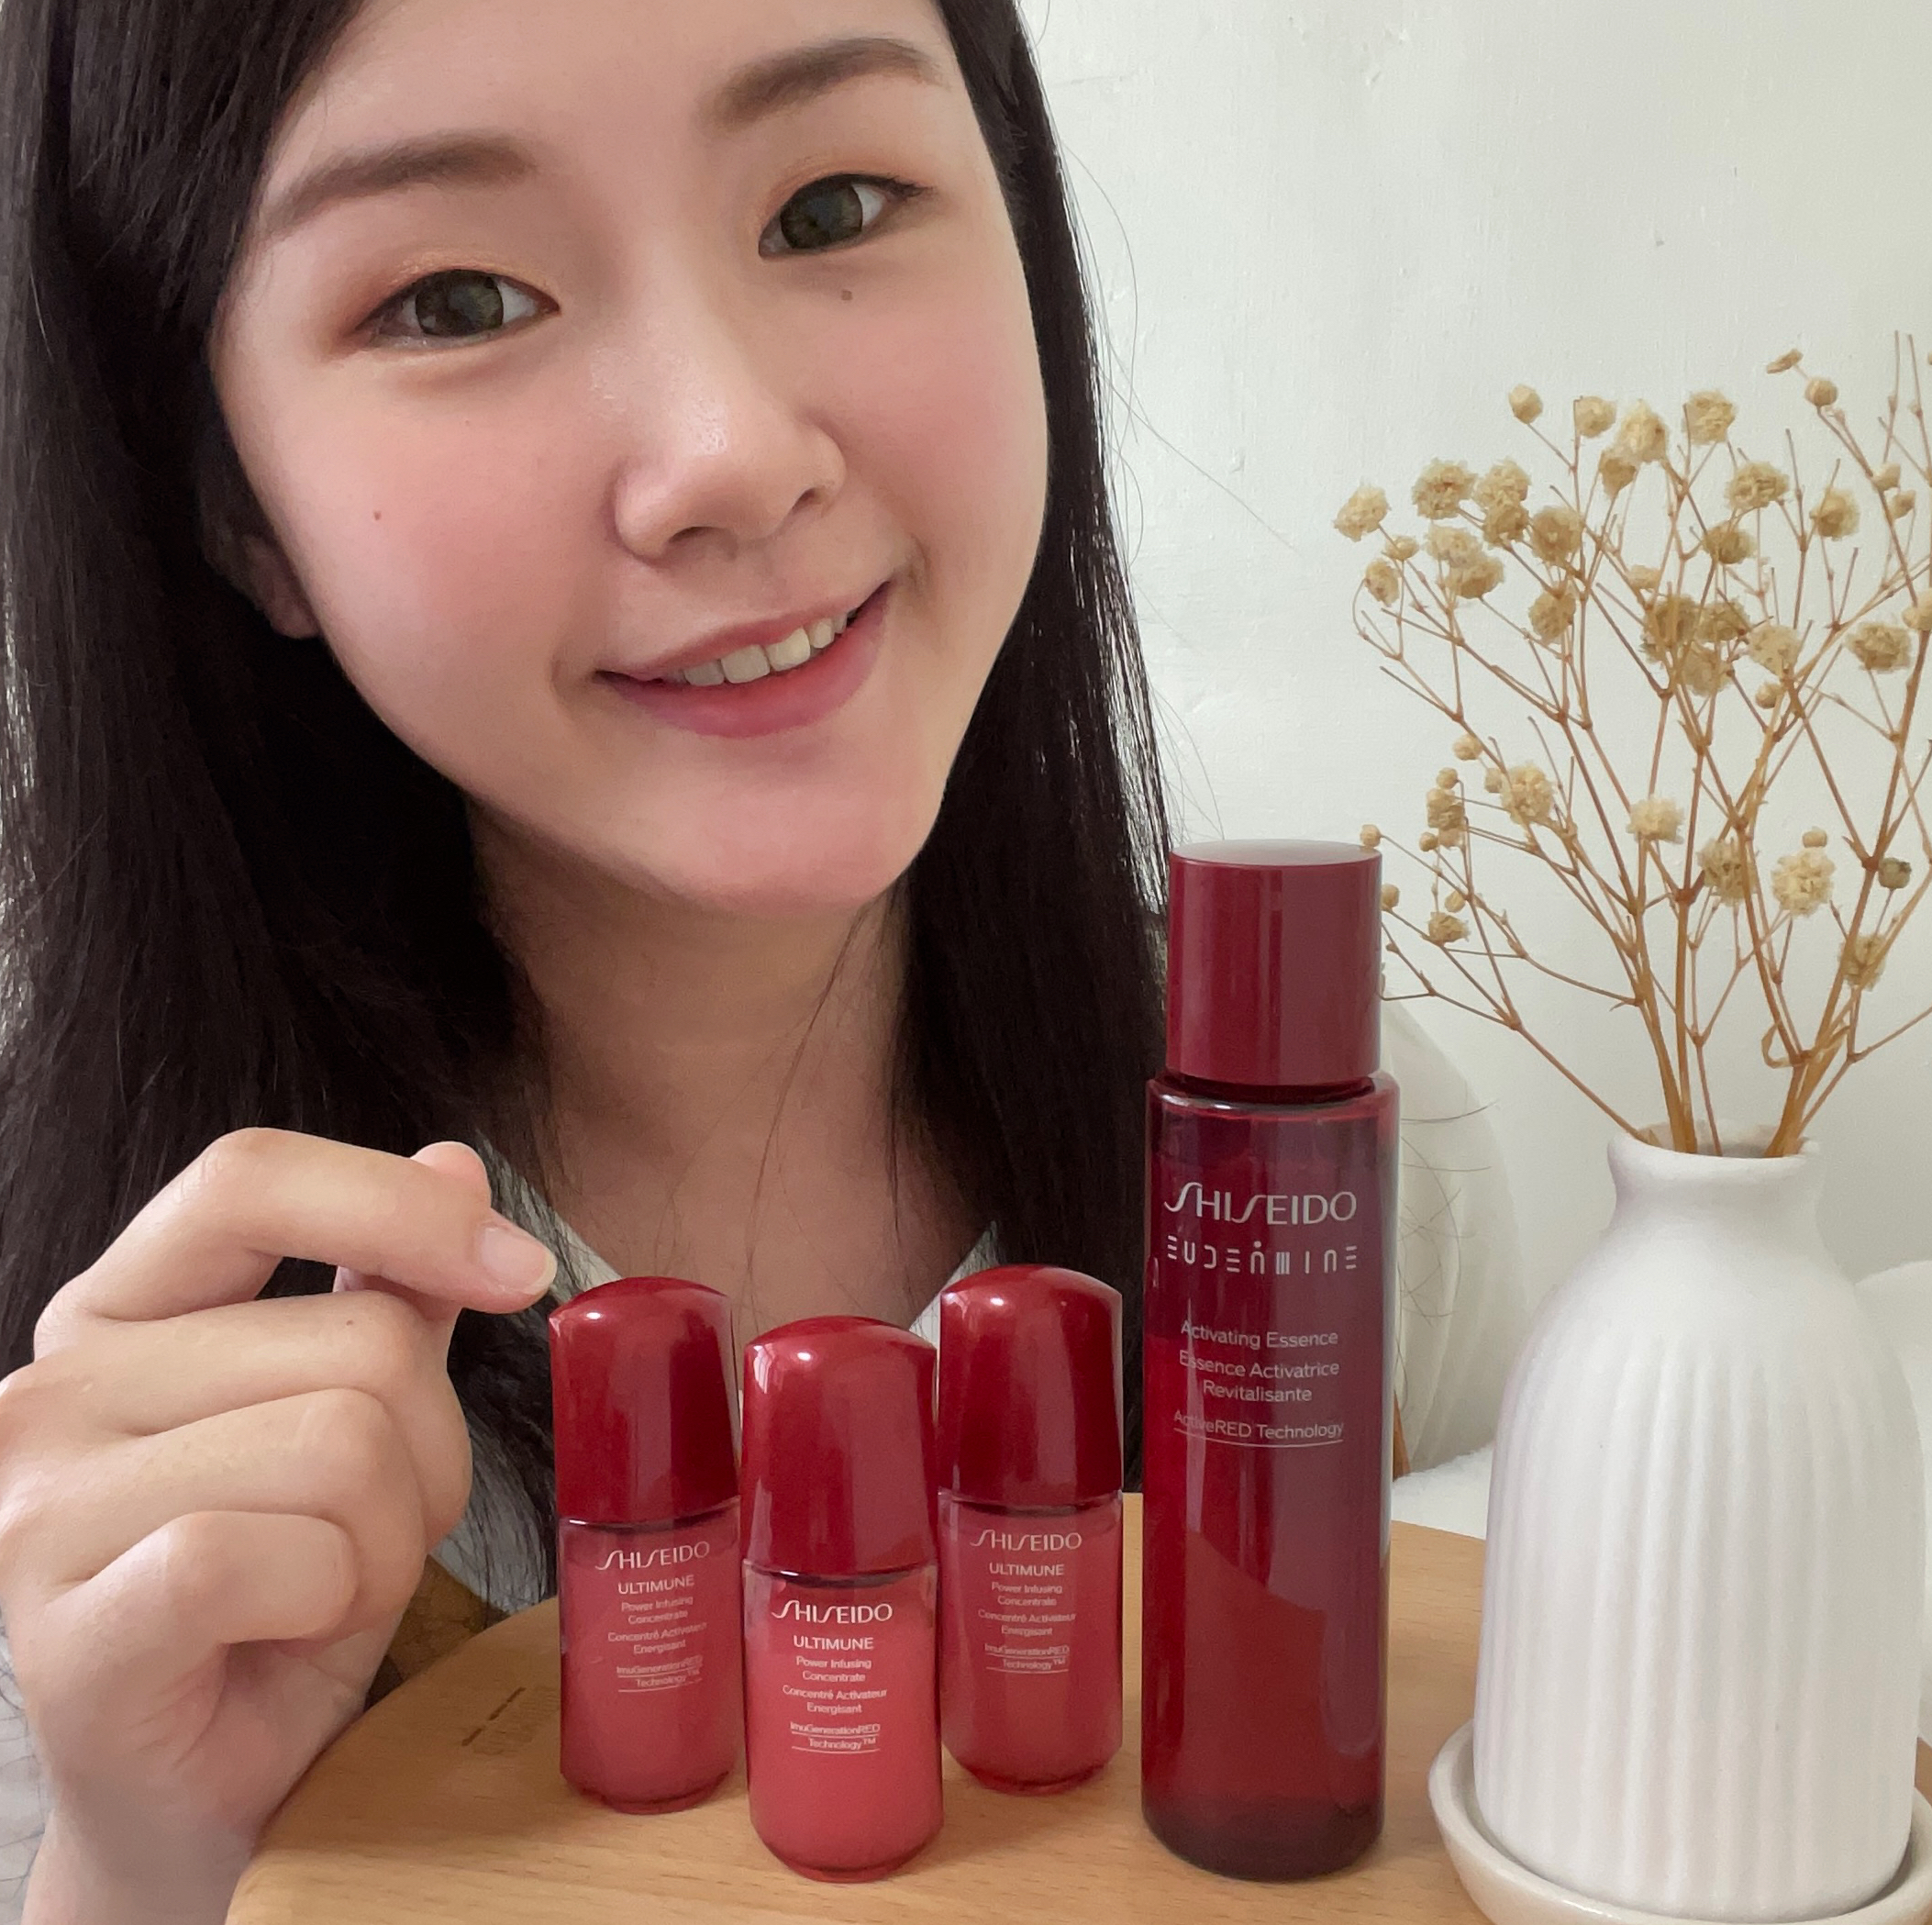 資生堂SHISEIDO小紅瓶 電波精華 神級保養品 雙倍淨嫩修護 打造柔嫩光澤透亮的肌膚